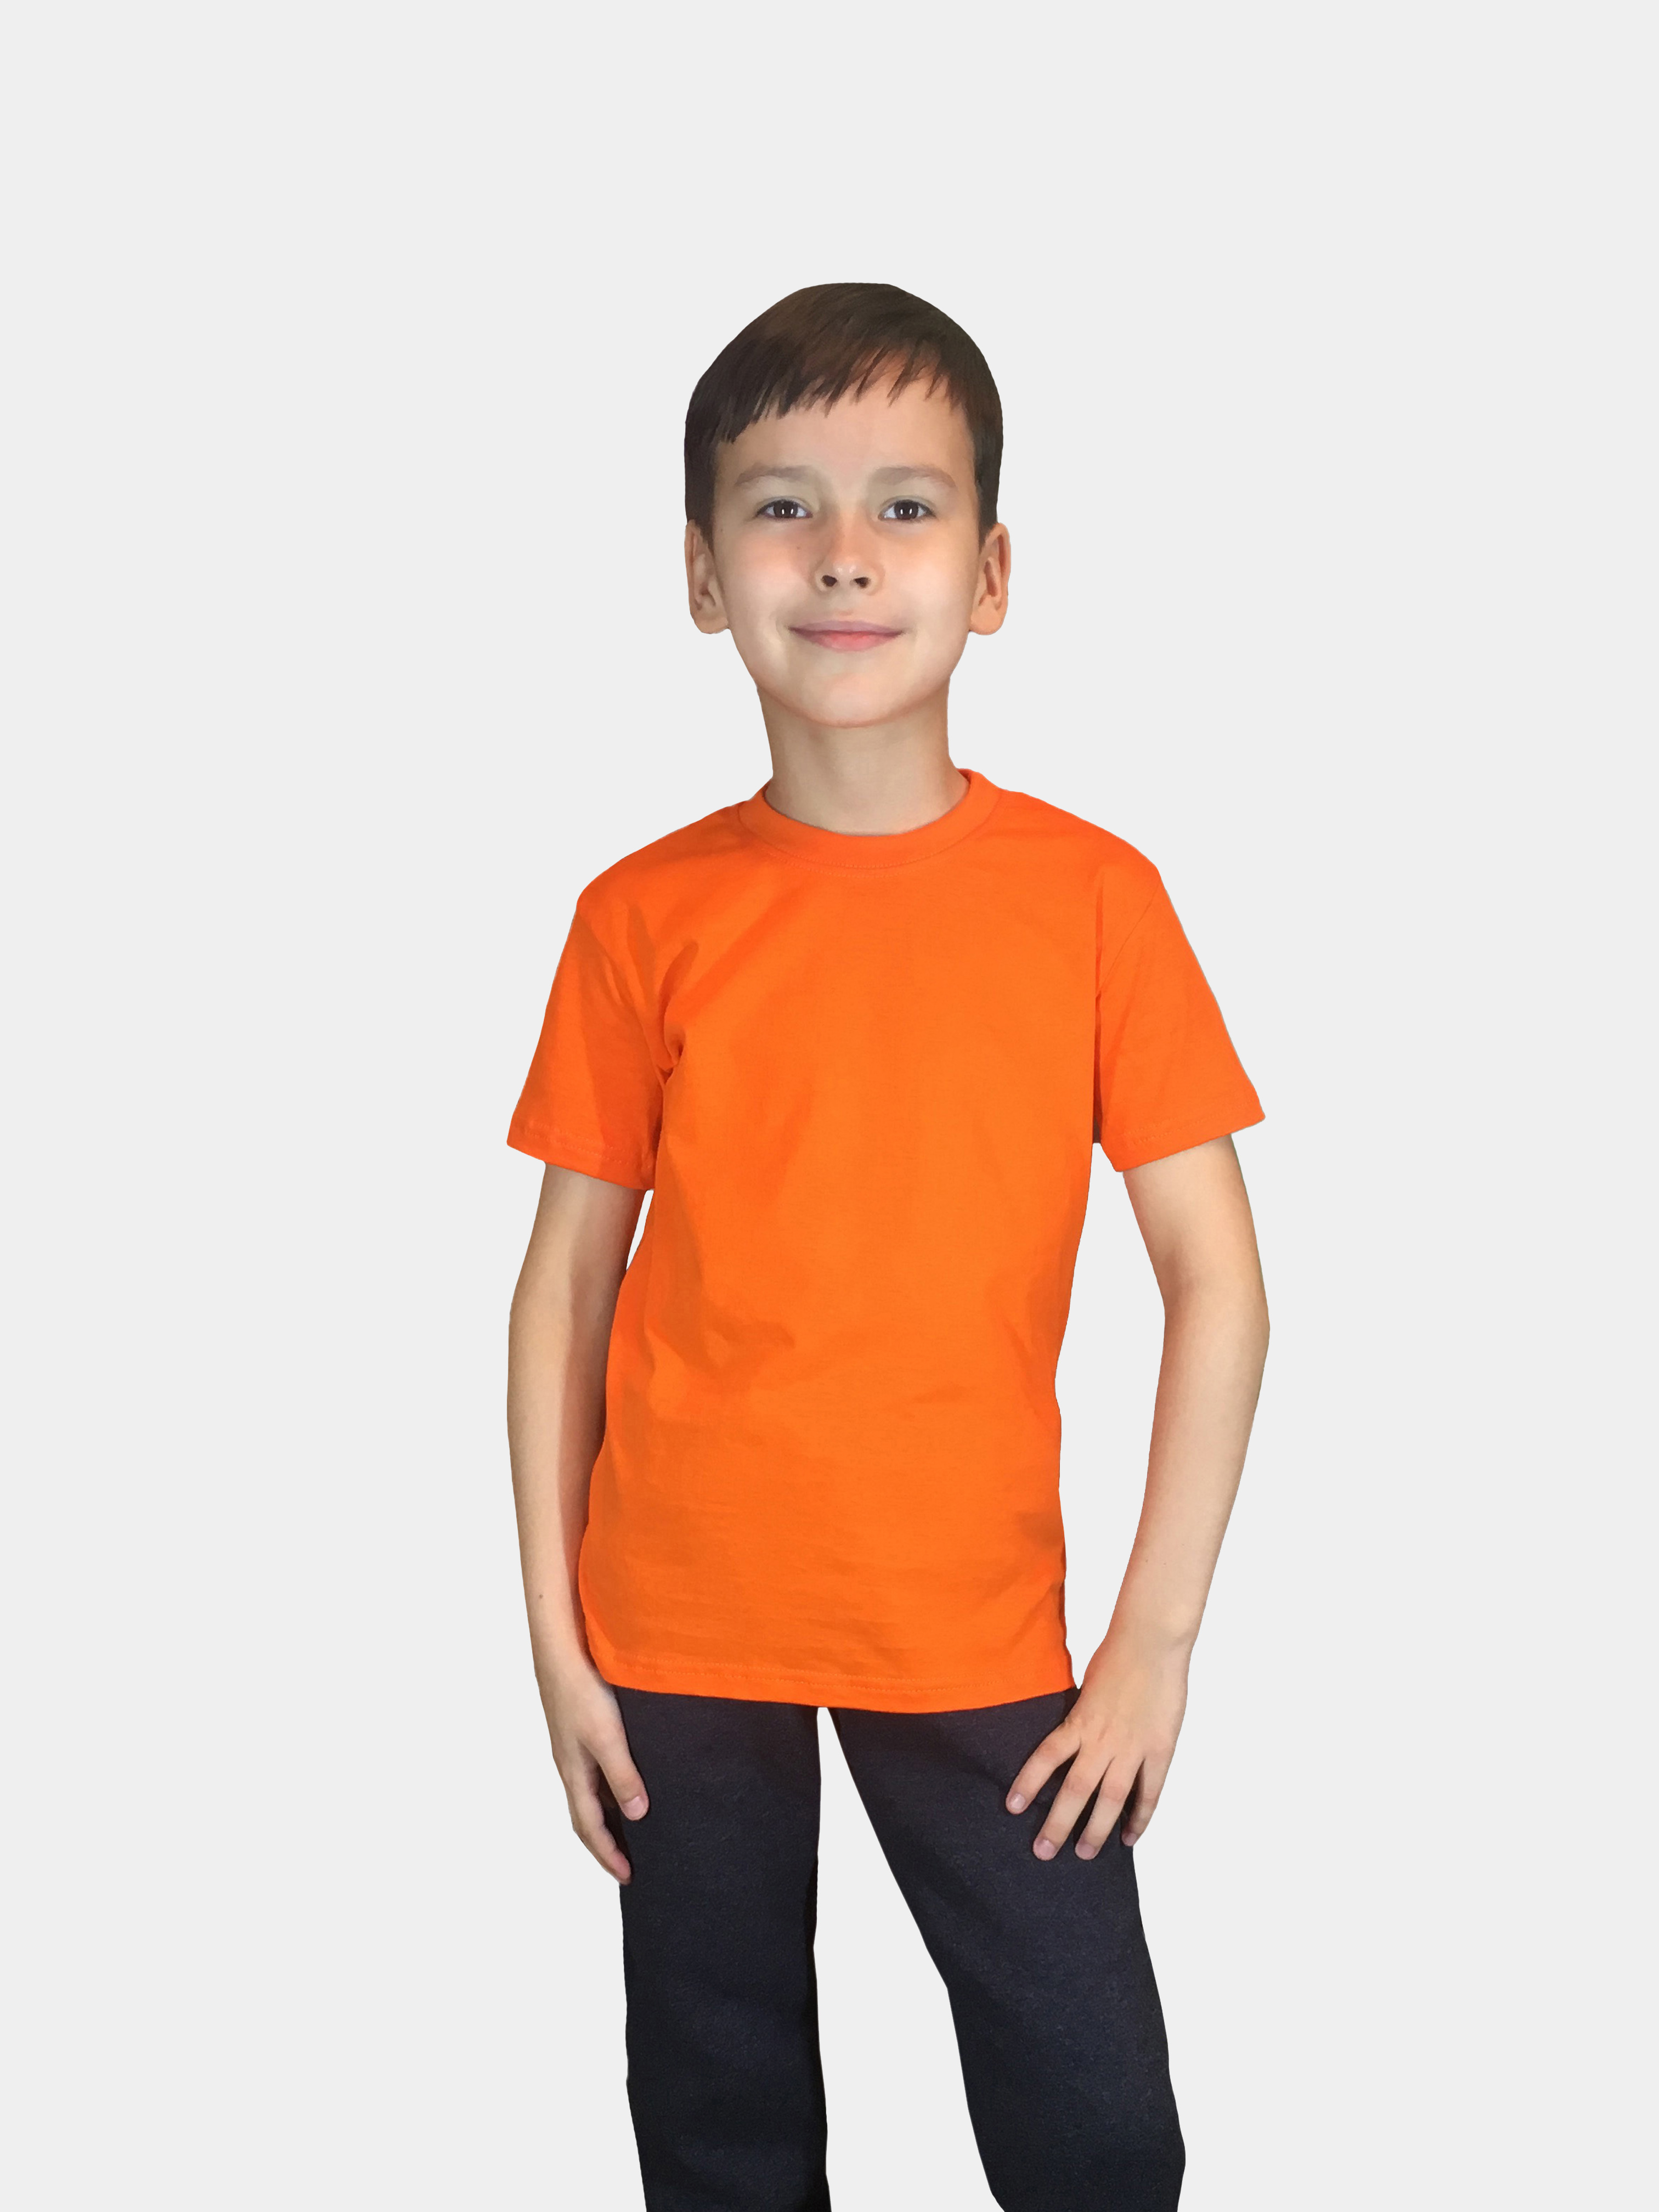 Футболка детская Детрик, оранжевая размер 128, Ф-1-117